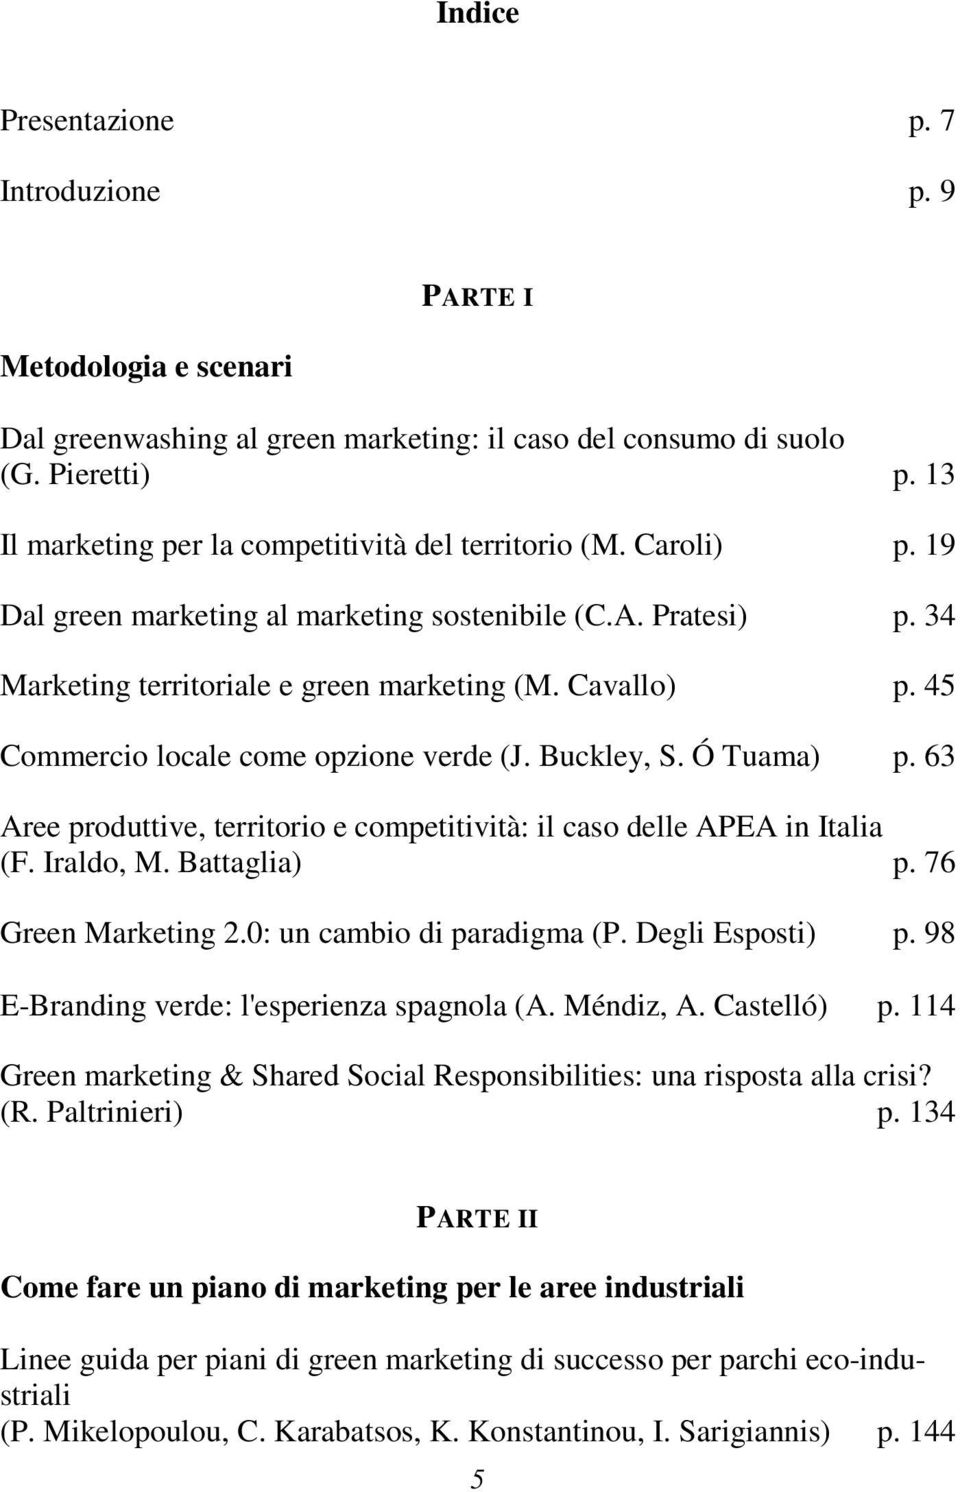 Ó Tuama)... p. 63 Aree produttive, territorio e competitività: il caso delle APEA in Italia (F. Iraldo, M. Battaglia)... p. 76 Green Marketing 2.0: un cambio di paradigma (P. Degli Esposti)... p. 98 E-Branding verde: l'esperienza spagnola (A.